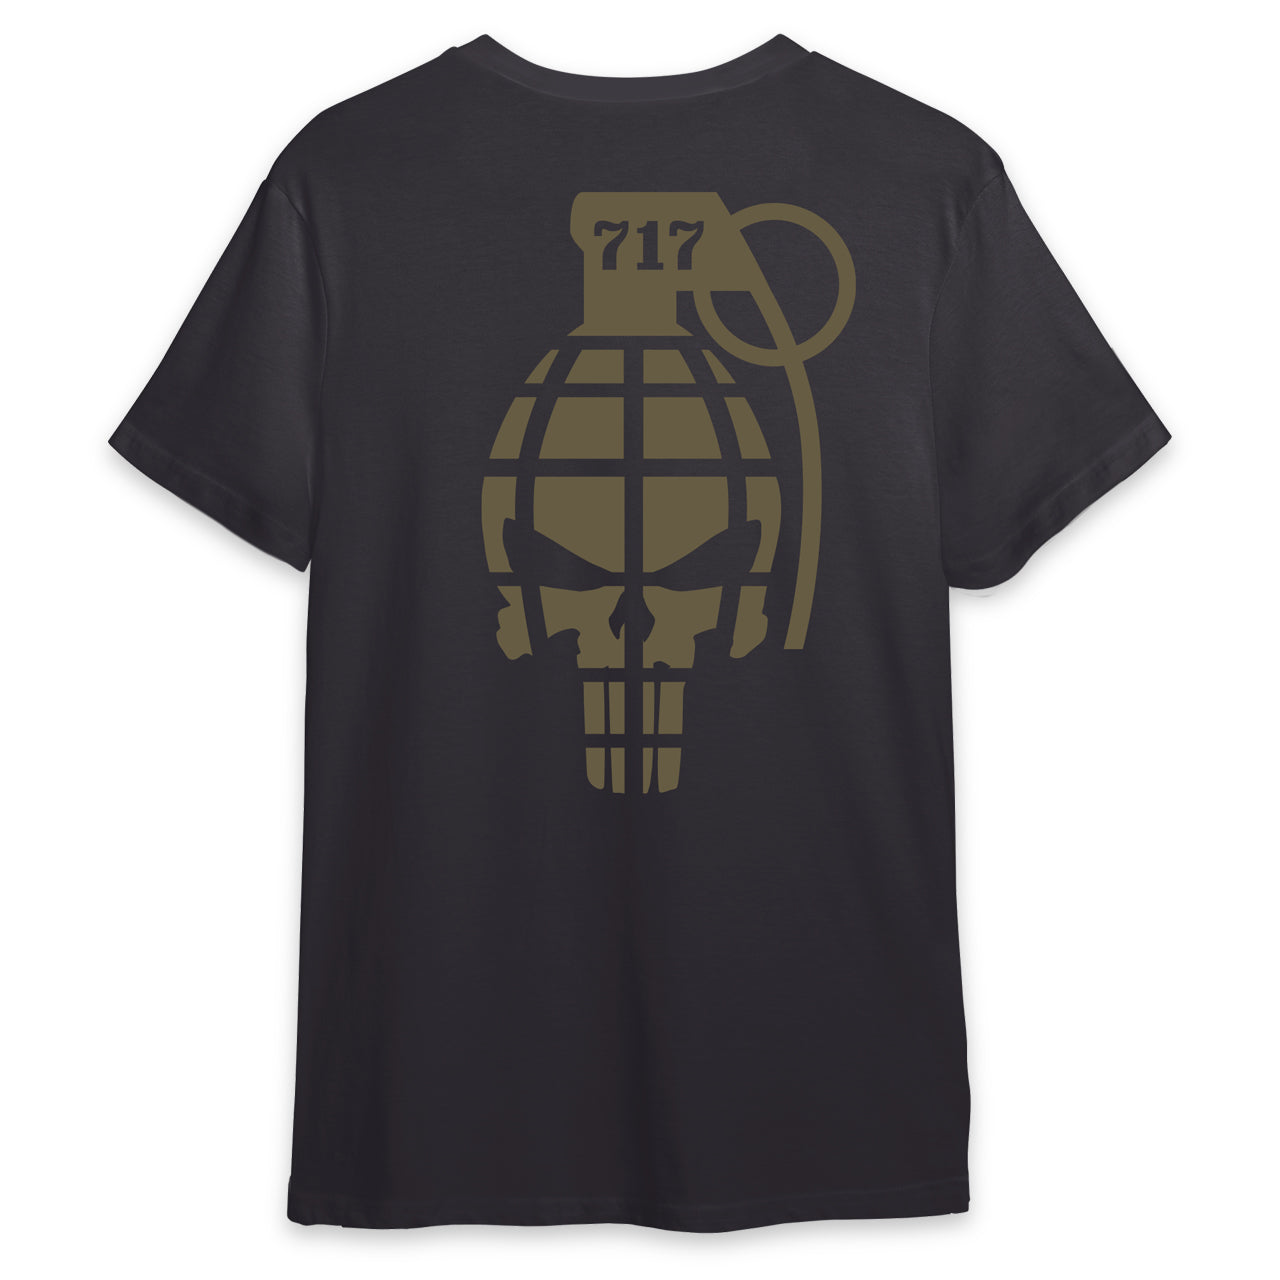 717 Frag Heavyweight Shirt